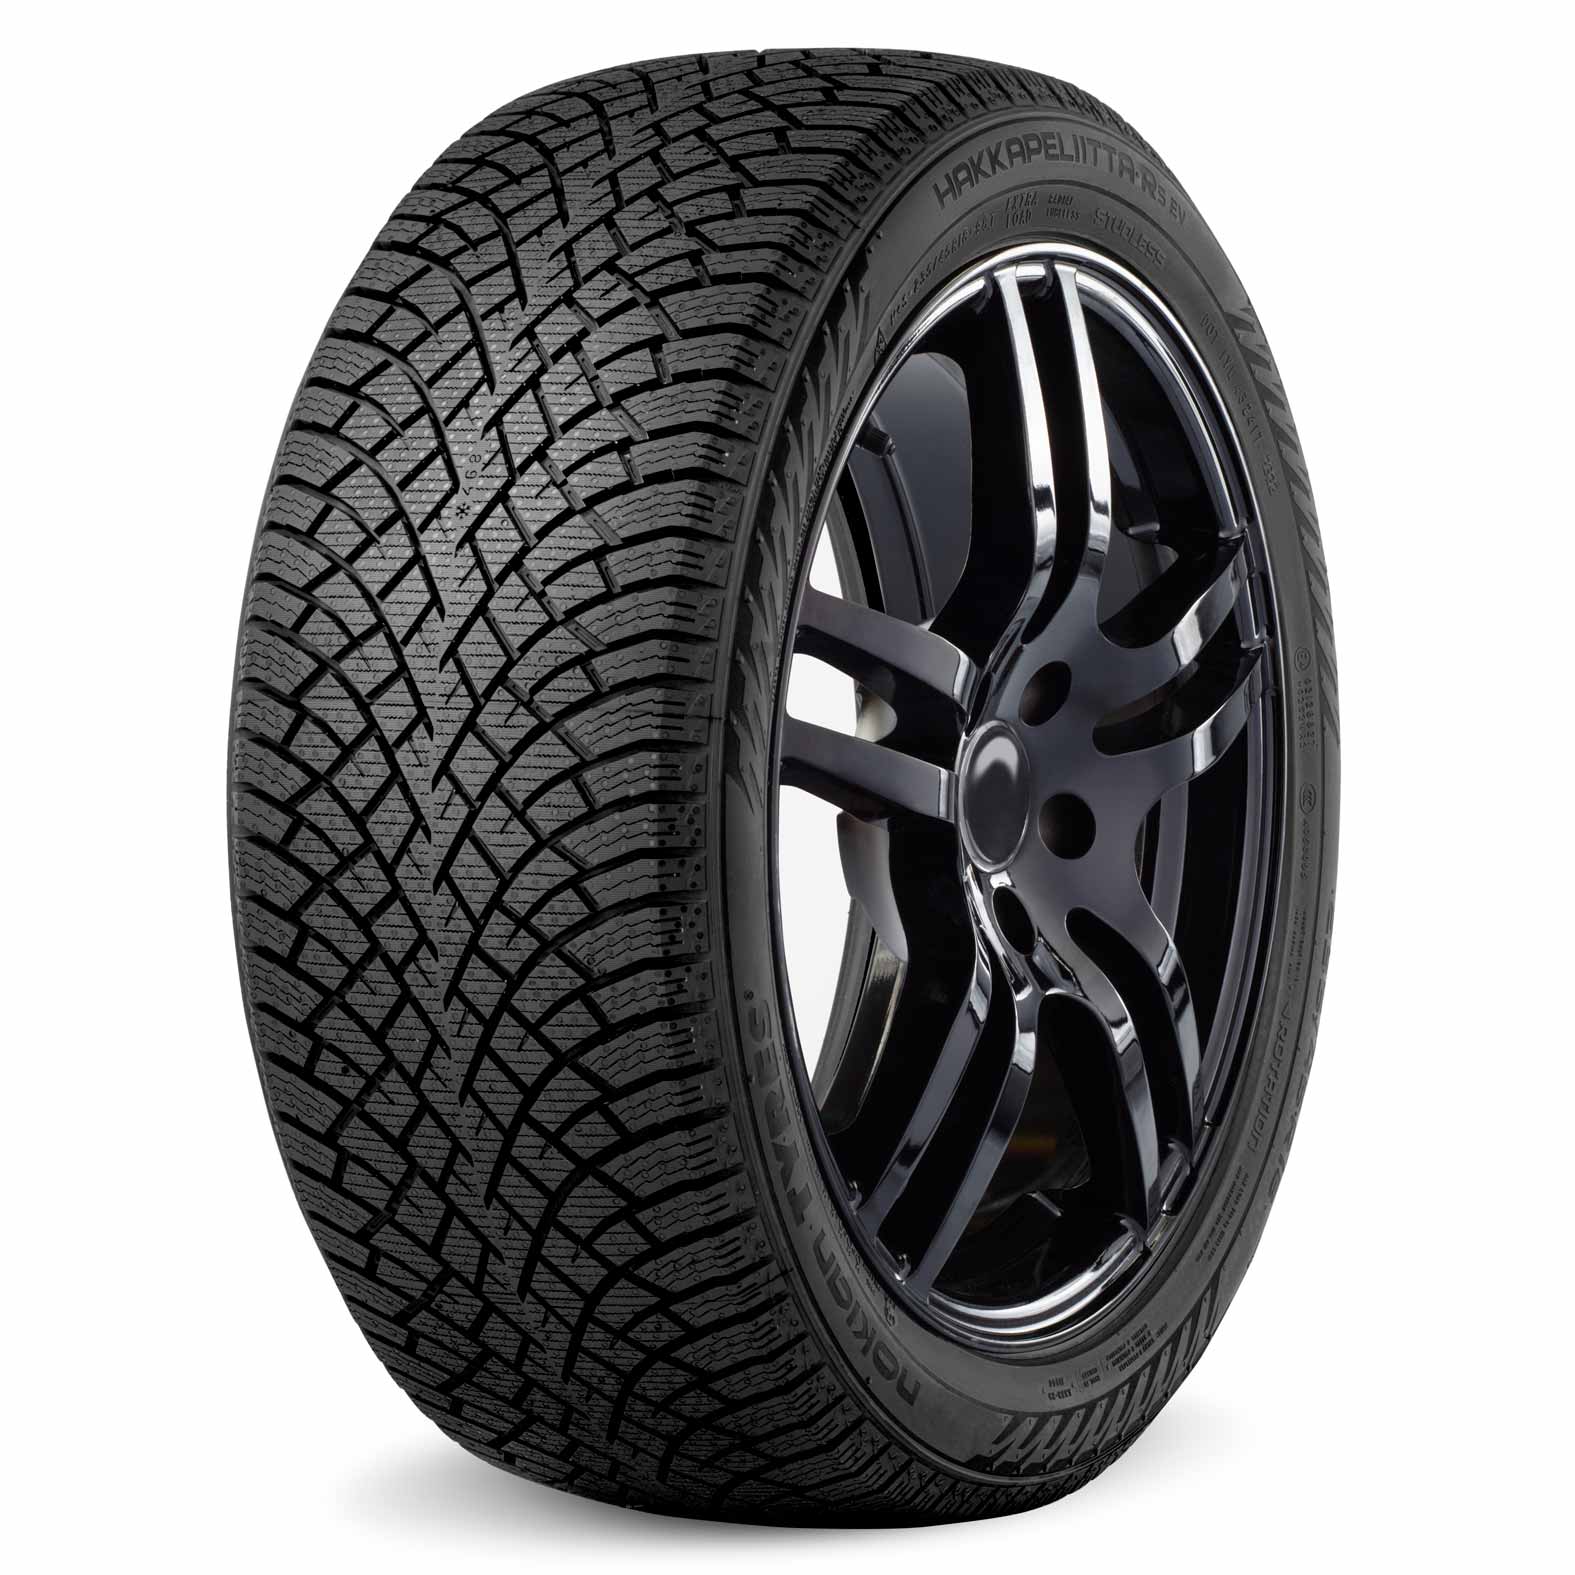 Nokian Hakkapeliitta R5 EV Tire for Winter | Kal Tire